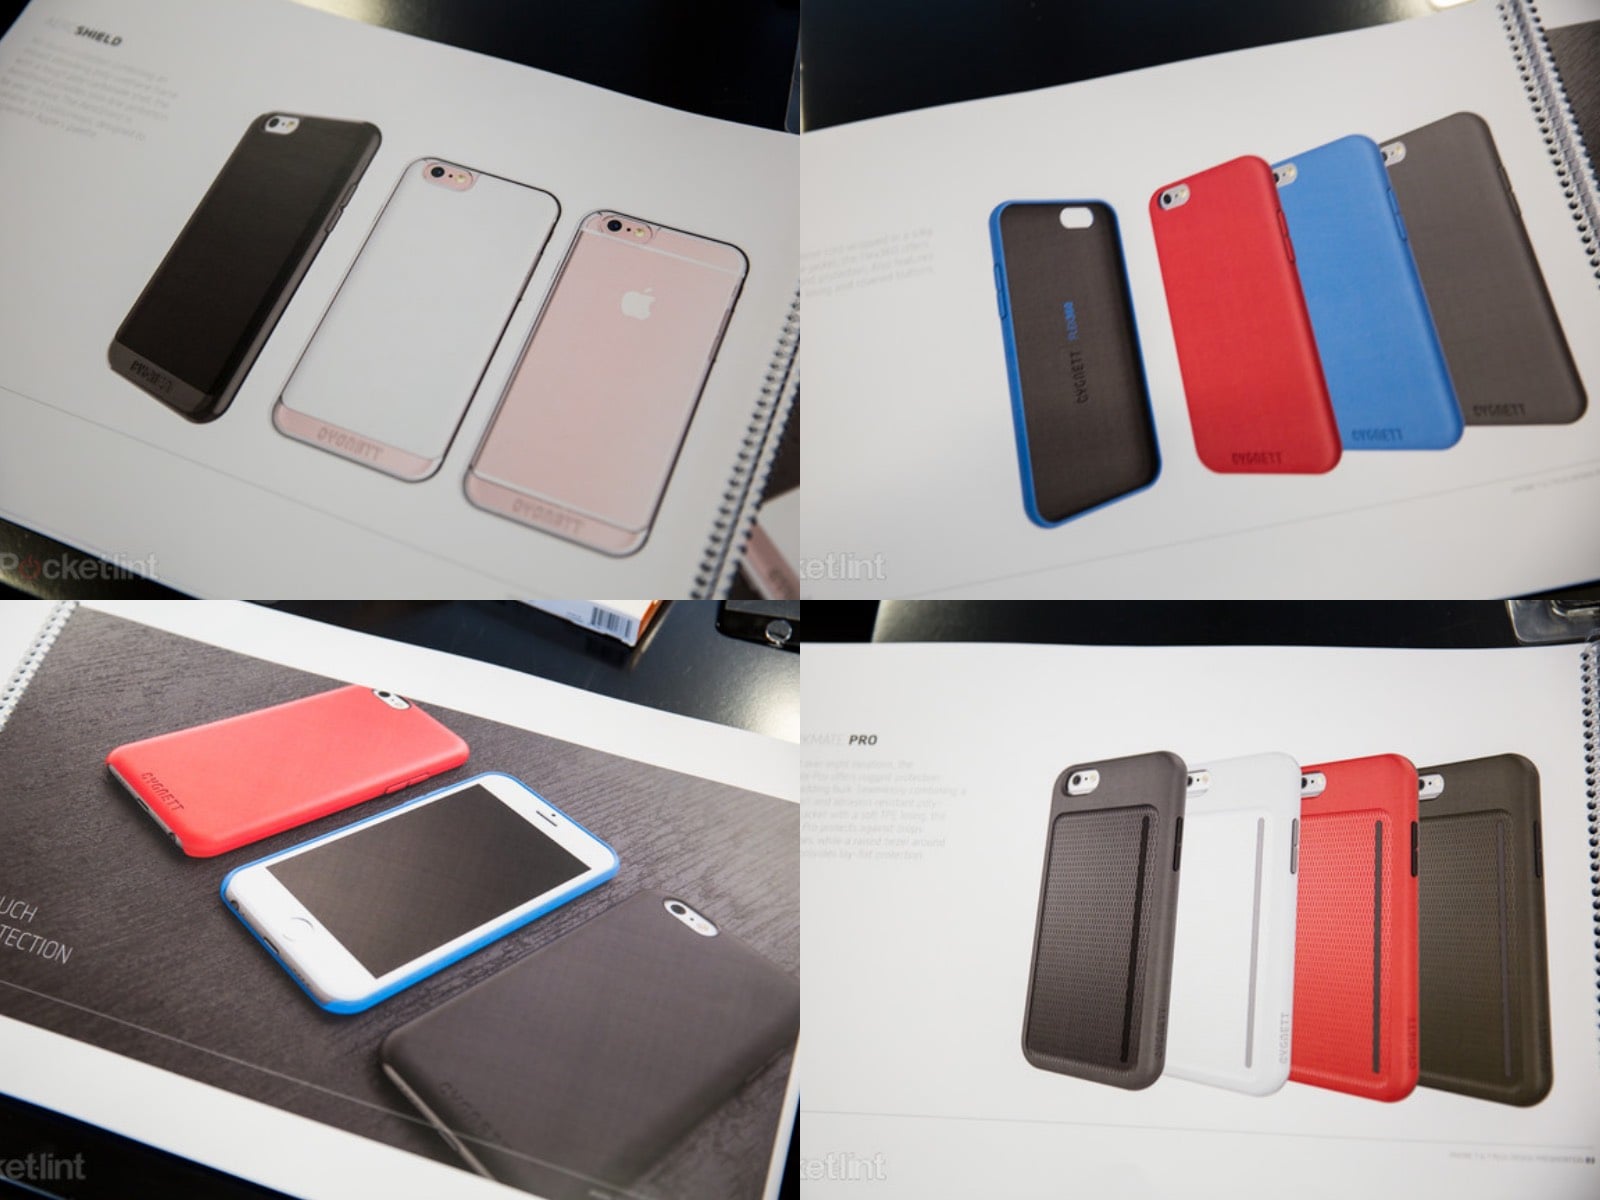 IPhone7 Cases DesignPhotos 02